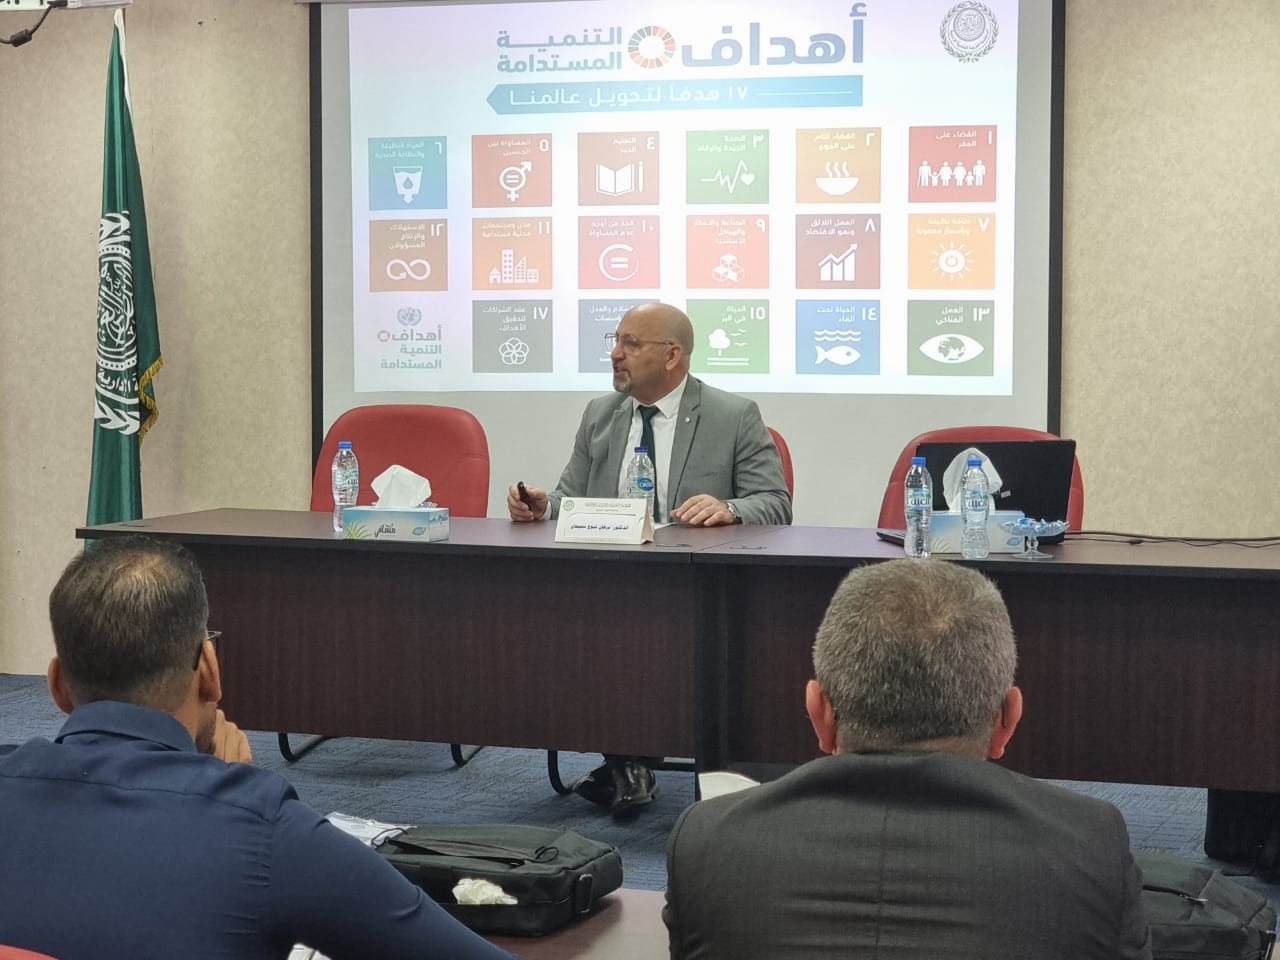 الملتقى العربي حول "التطوير المؤسسي